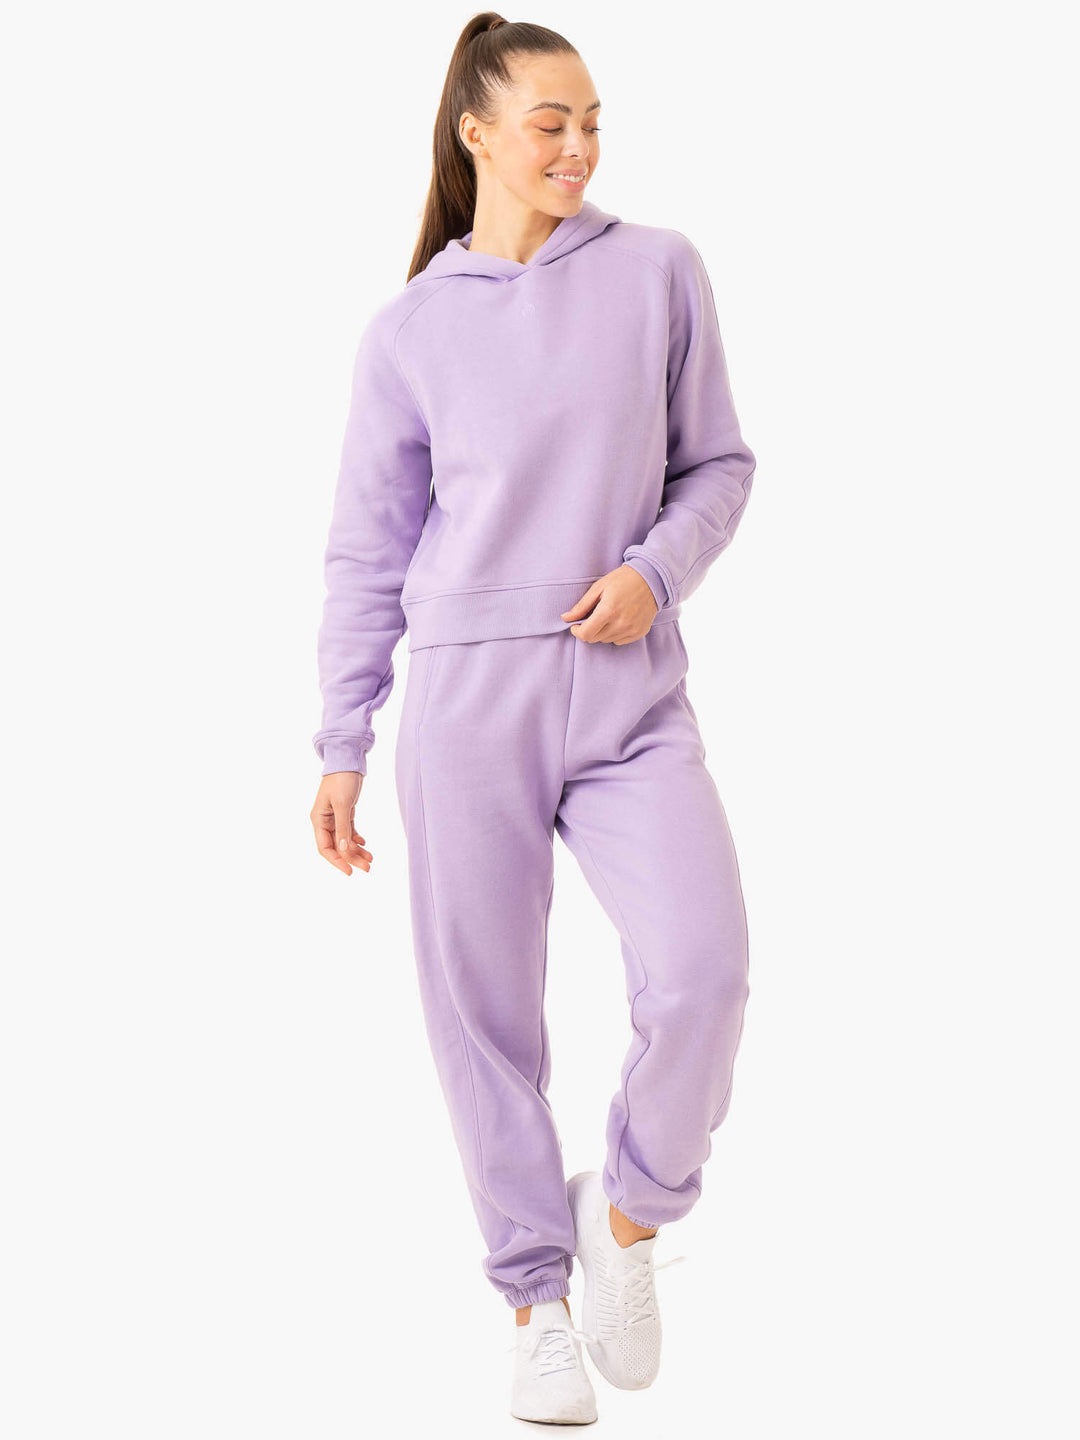 Sideline Hoodie - Lilac Clothing Ryderwear 